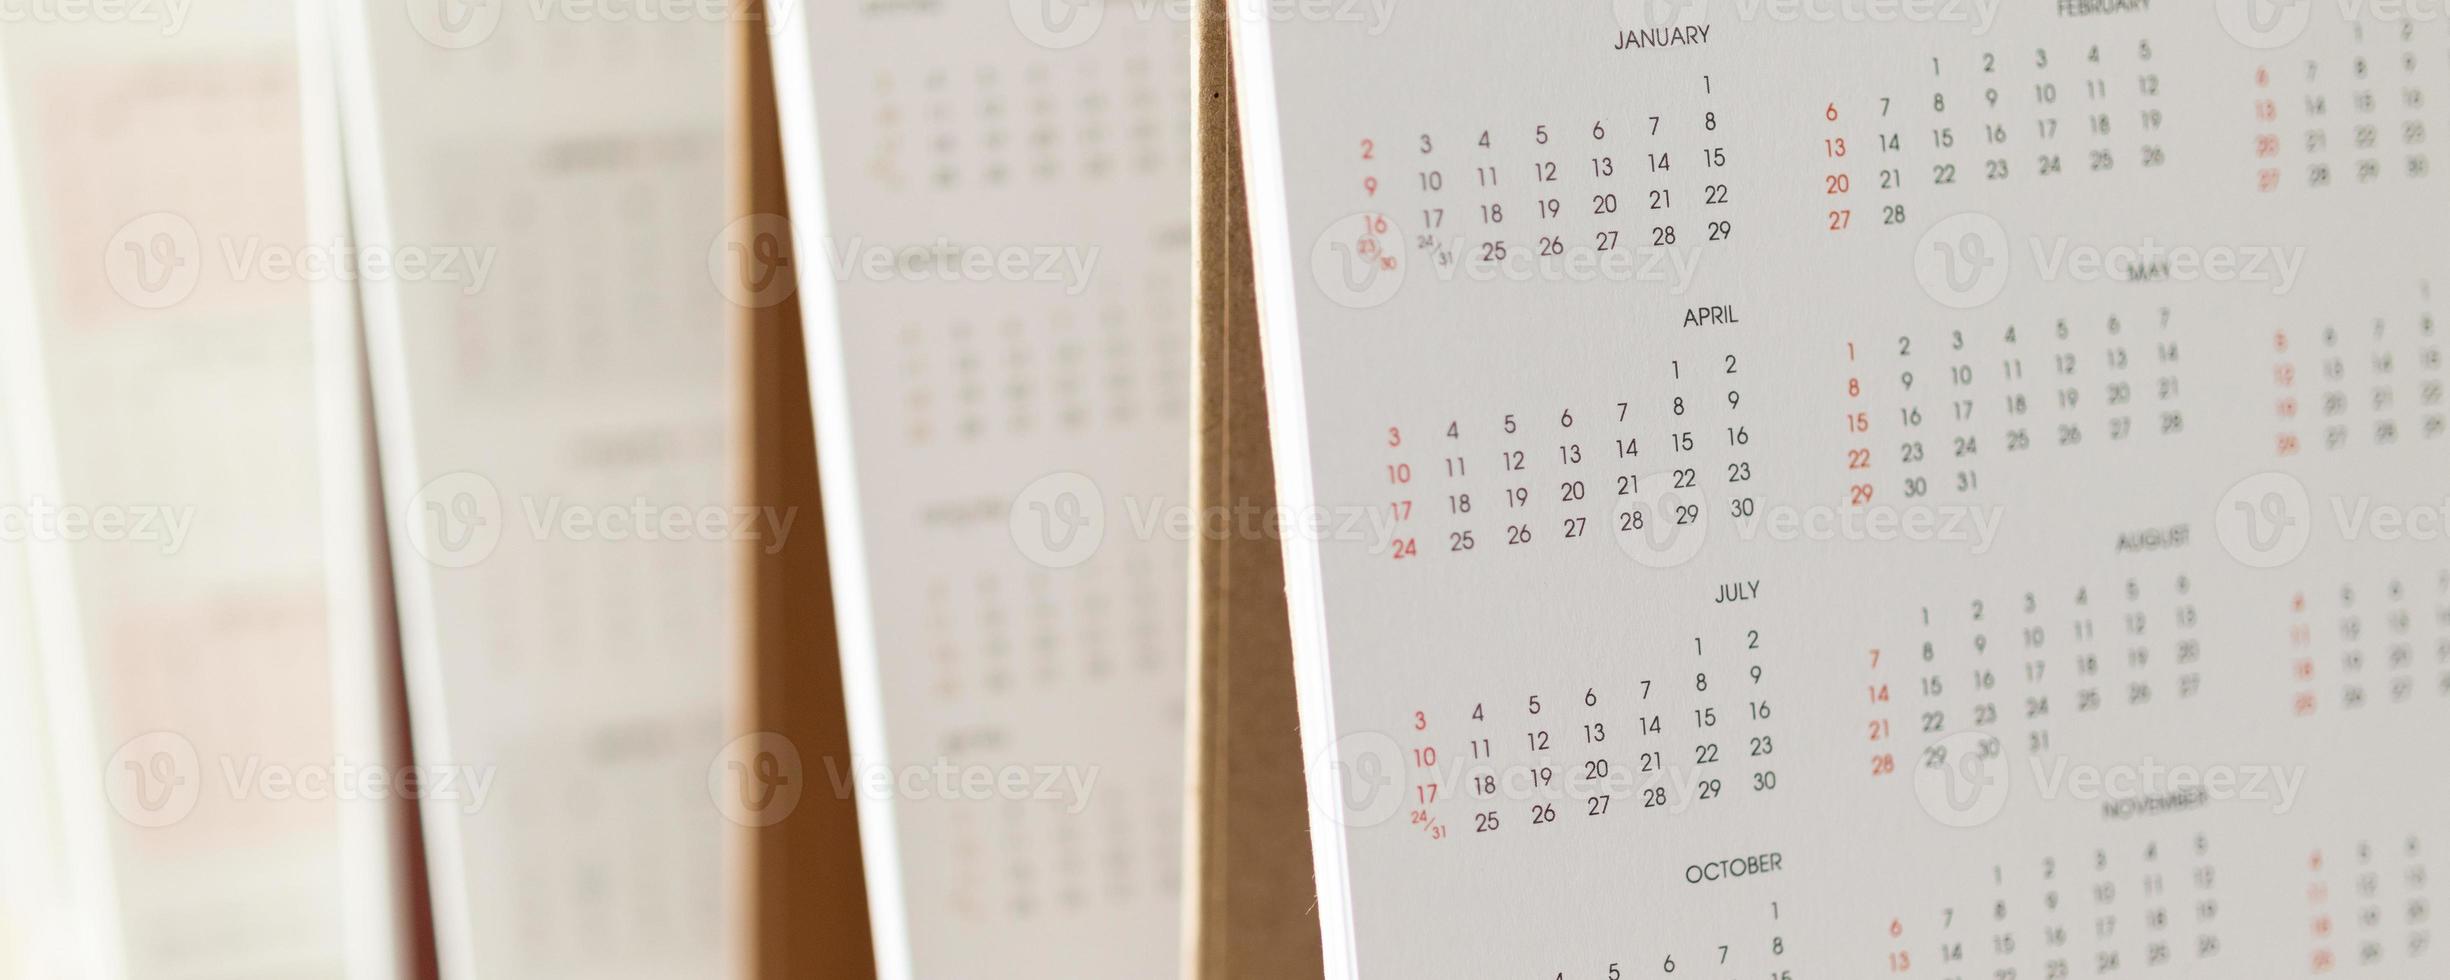 cierre las fechas de la página del calendario y el concepto de reunión de la cita de planificación empresarial de fondo del mes foto